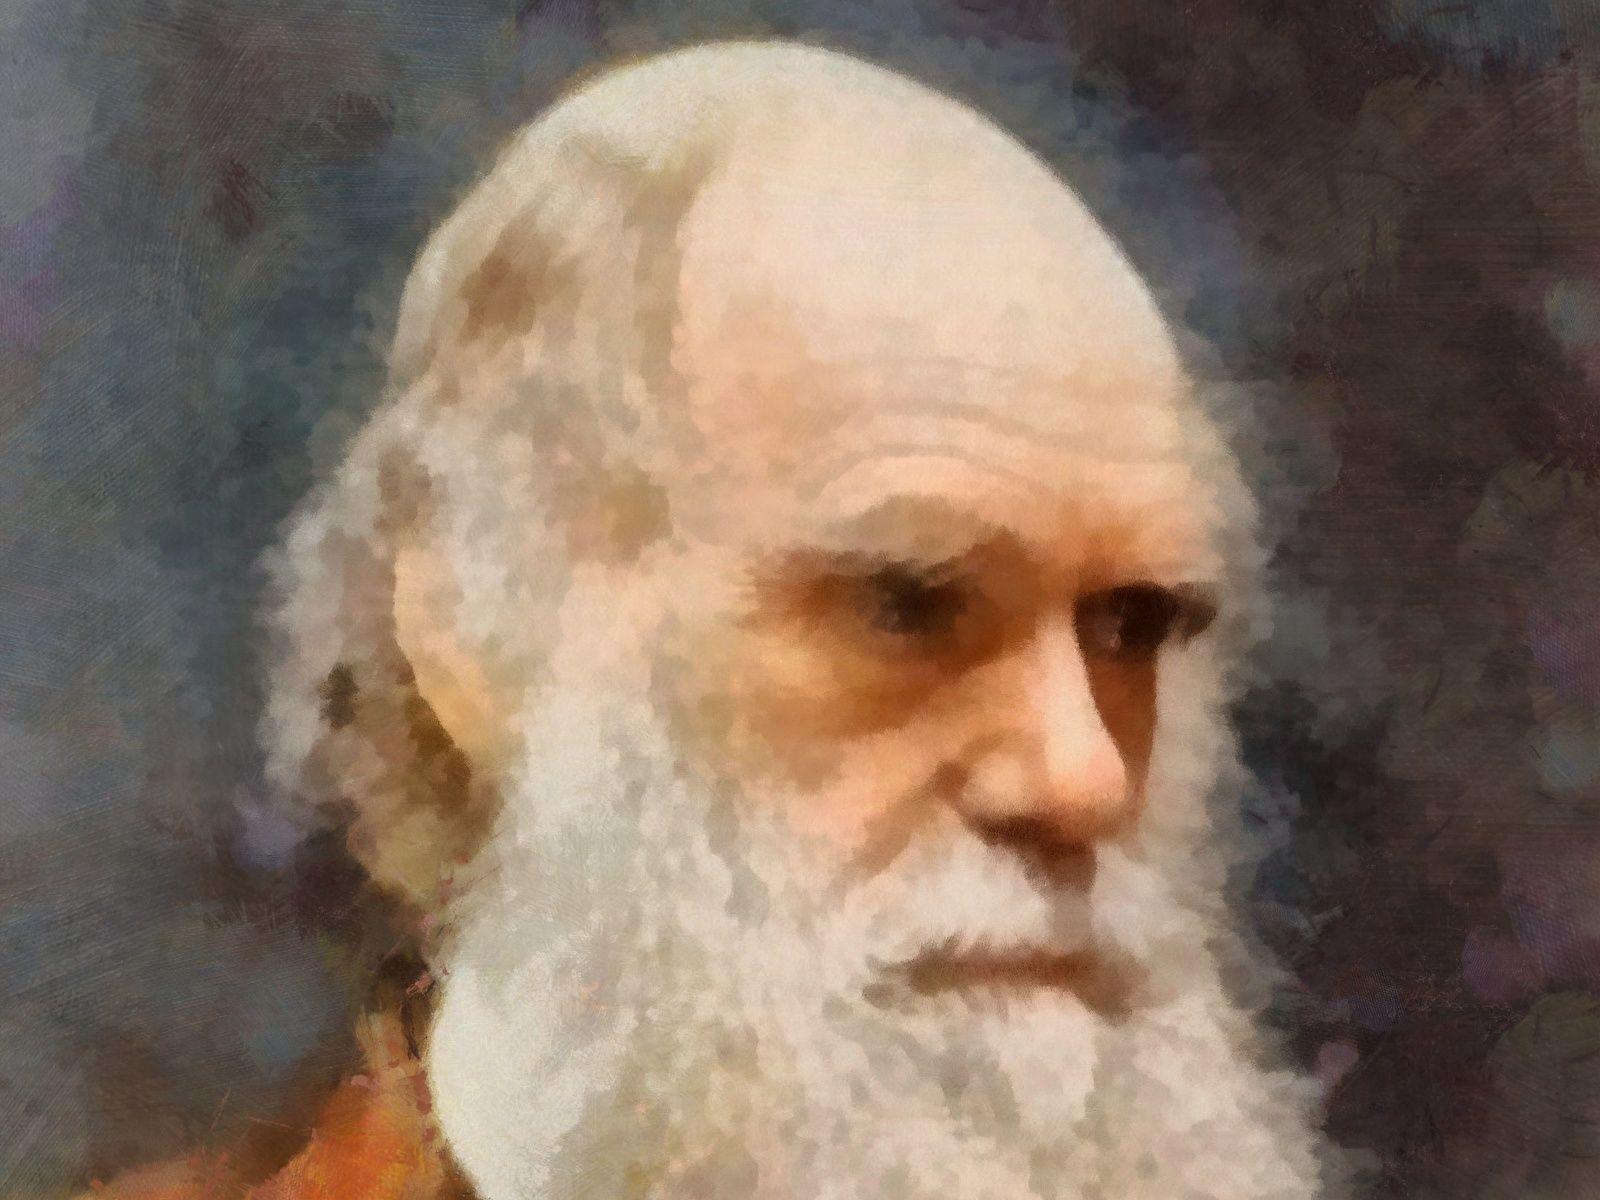 تصویر استوک با کیفیت از مرد بزرگ به نام چارلز داروین